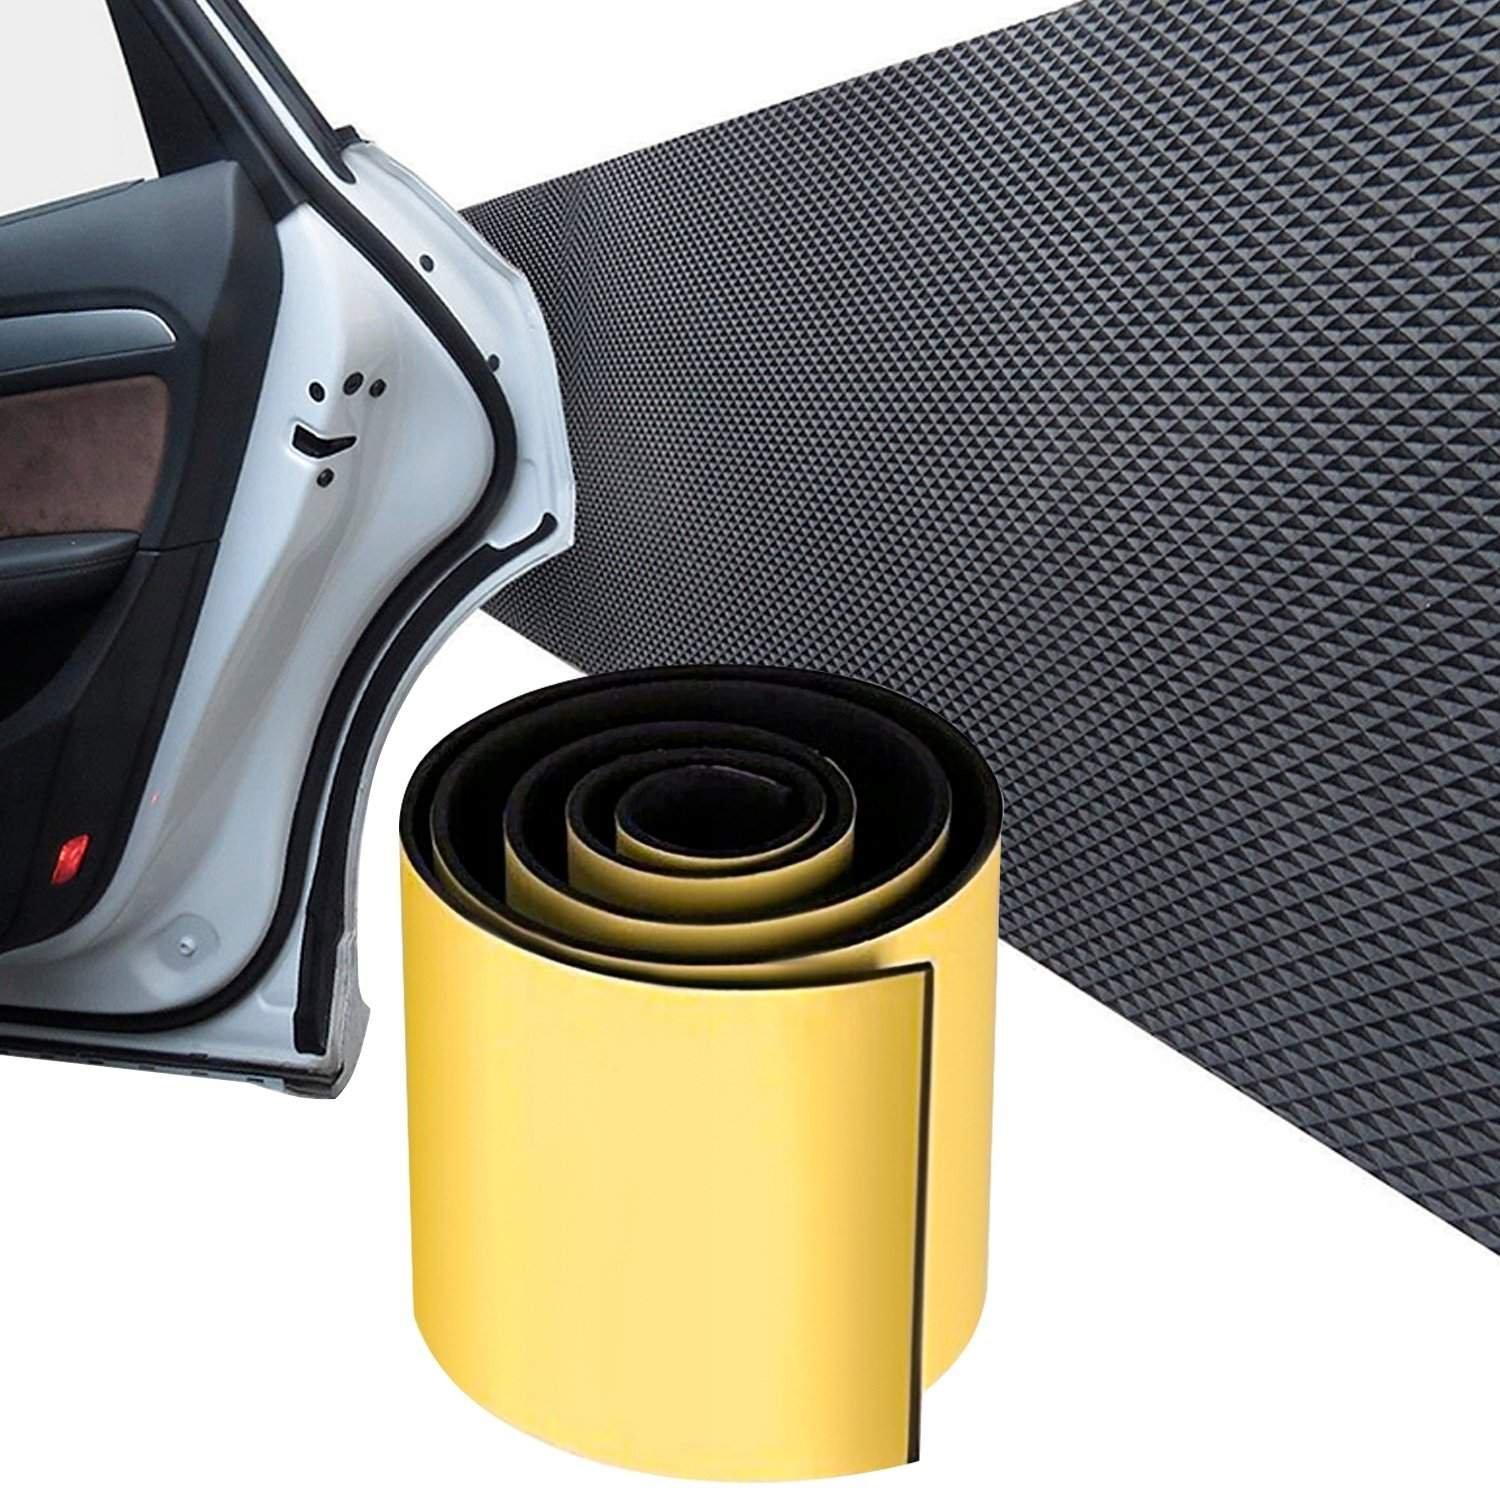 eStore Wandschutz für Autotür - Schutzleiste für Garage  